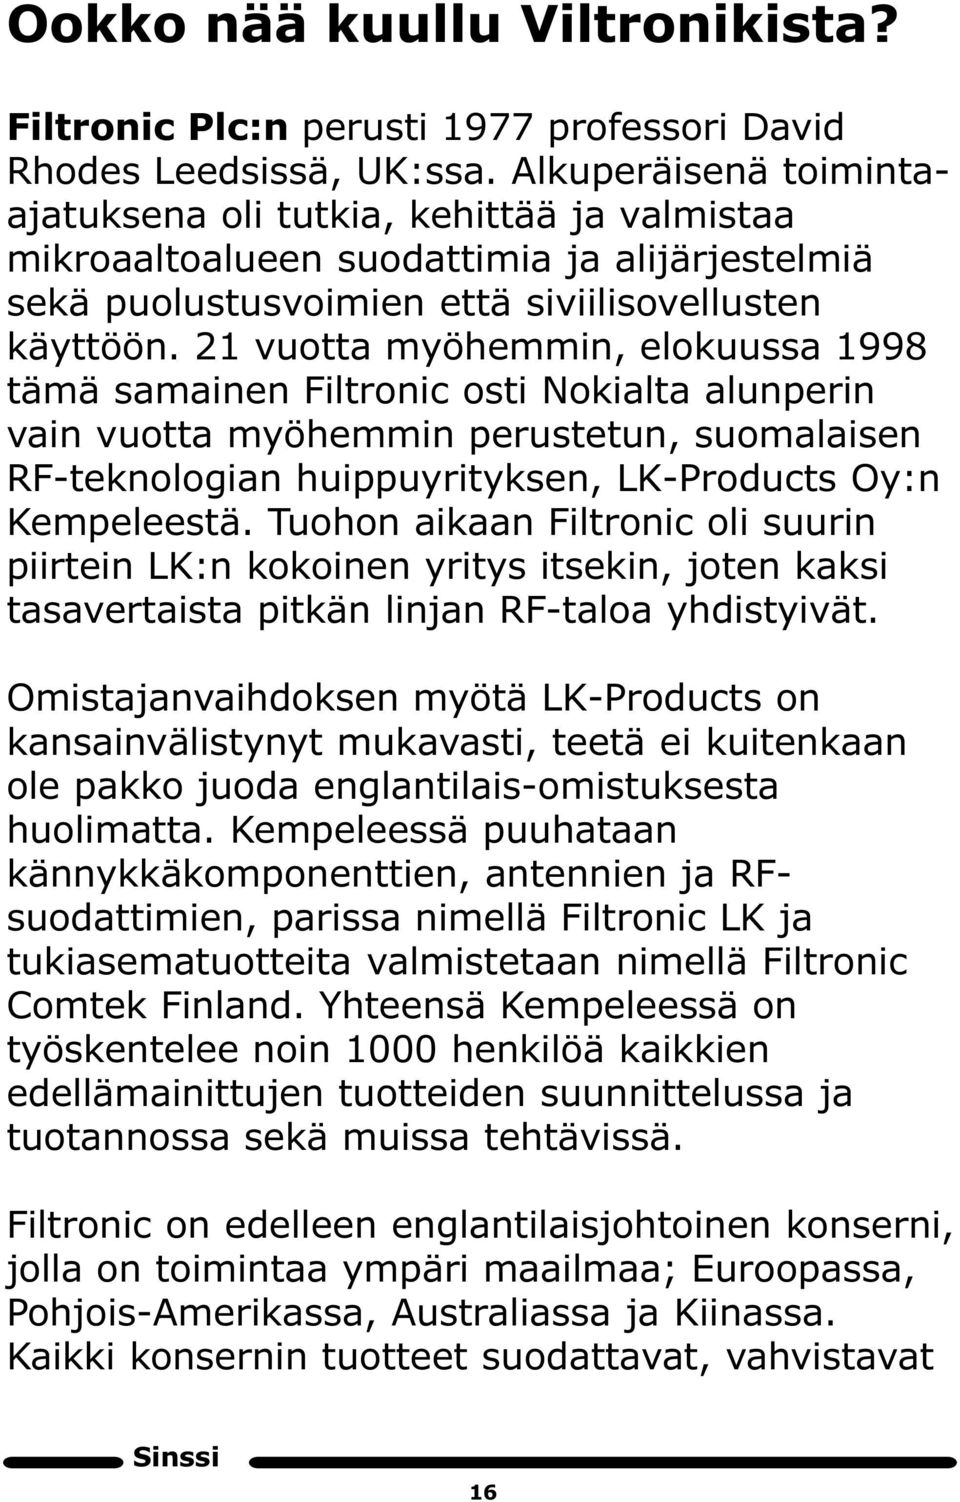 21 vuotta myöhemmin, elokuussa 1998 tämä samainen iltronic osti Nokialta alunperin vain vuotta myöhemmin perustetun, suomalaisen R -teknologian huippuyrityksen, LK-Products Oy:n Kempeleestä.